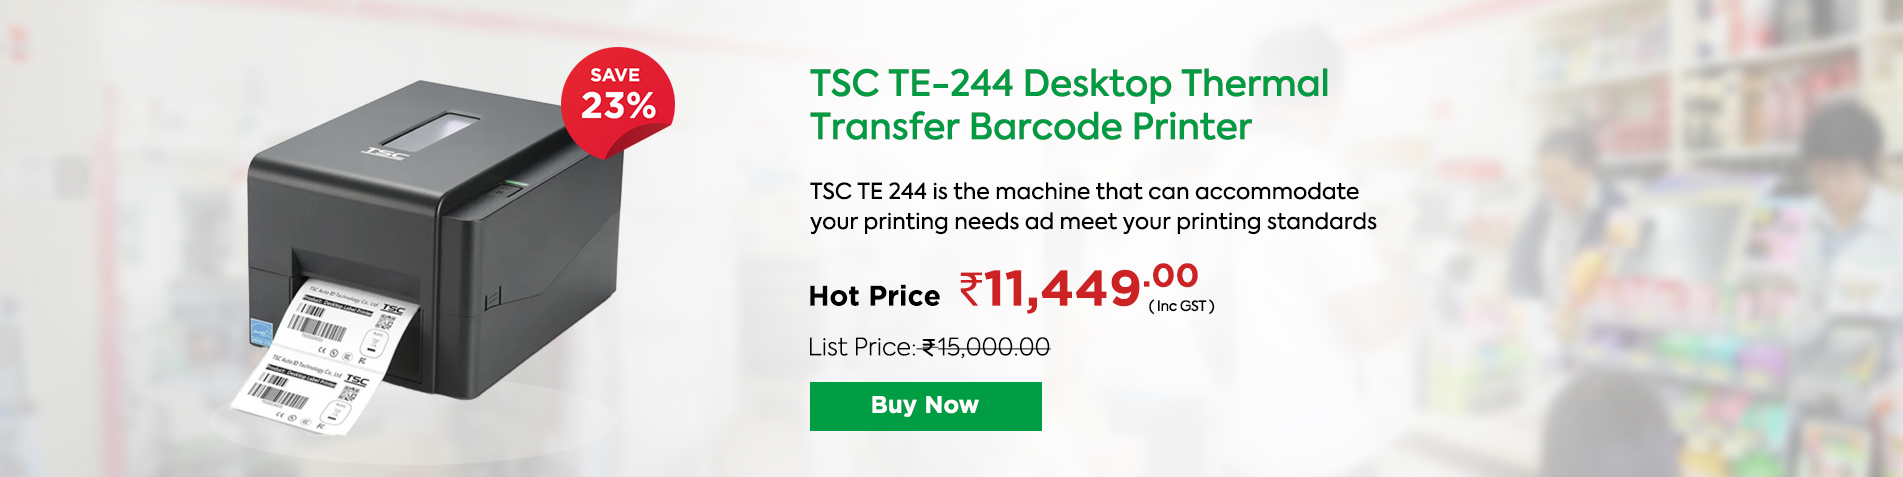 TSC TE-244